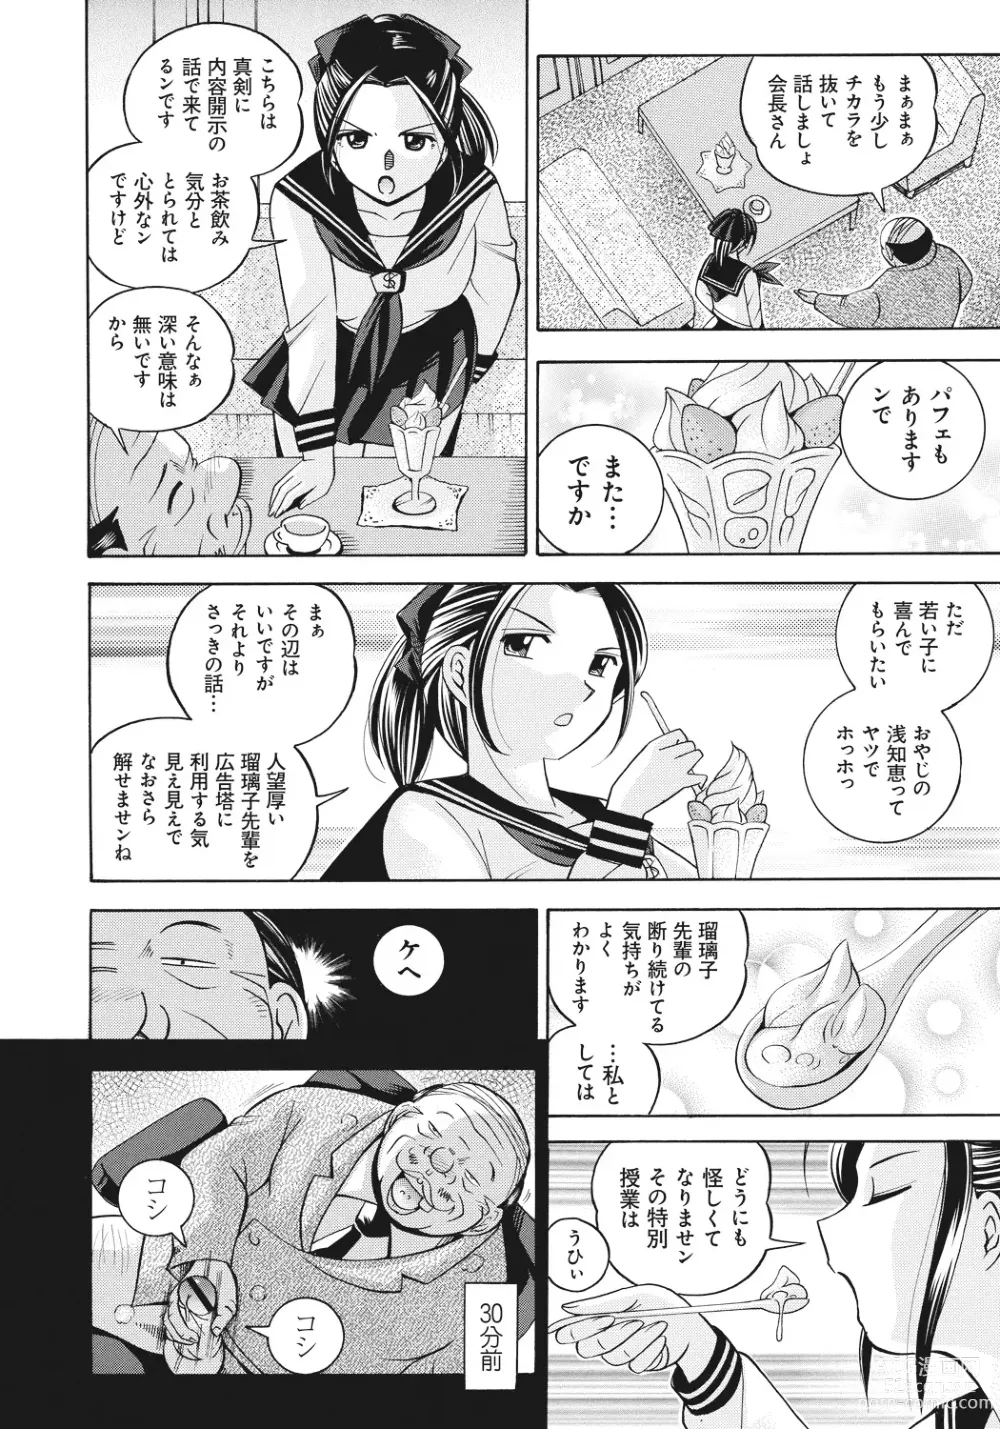 Page 9 of manga Student Council President Mitsuki